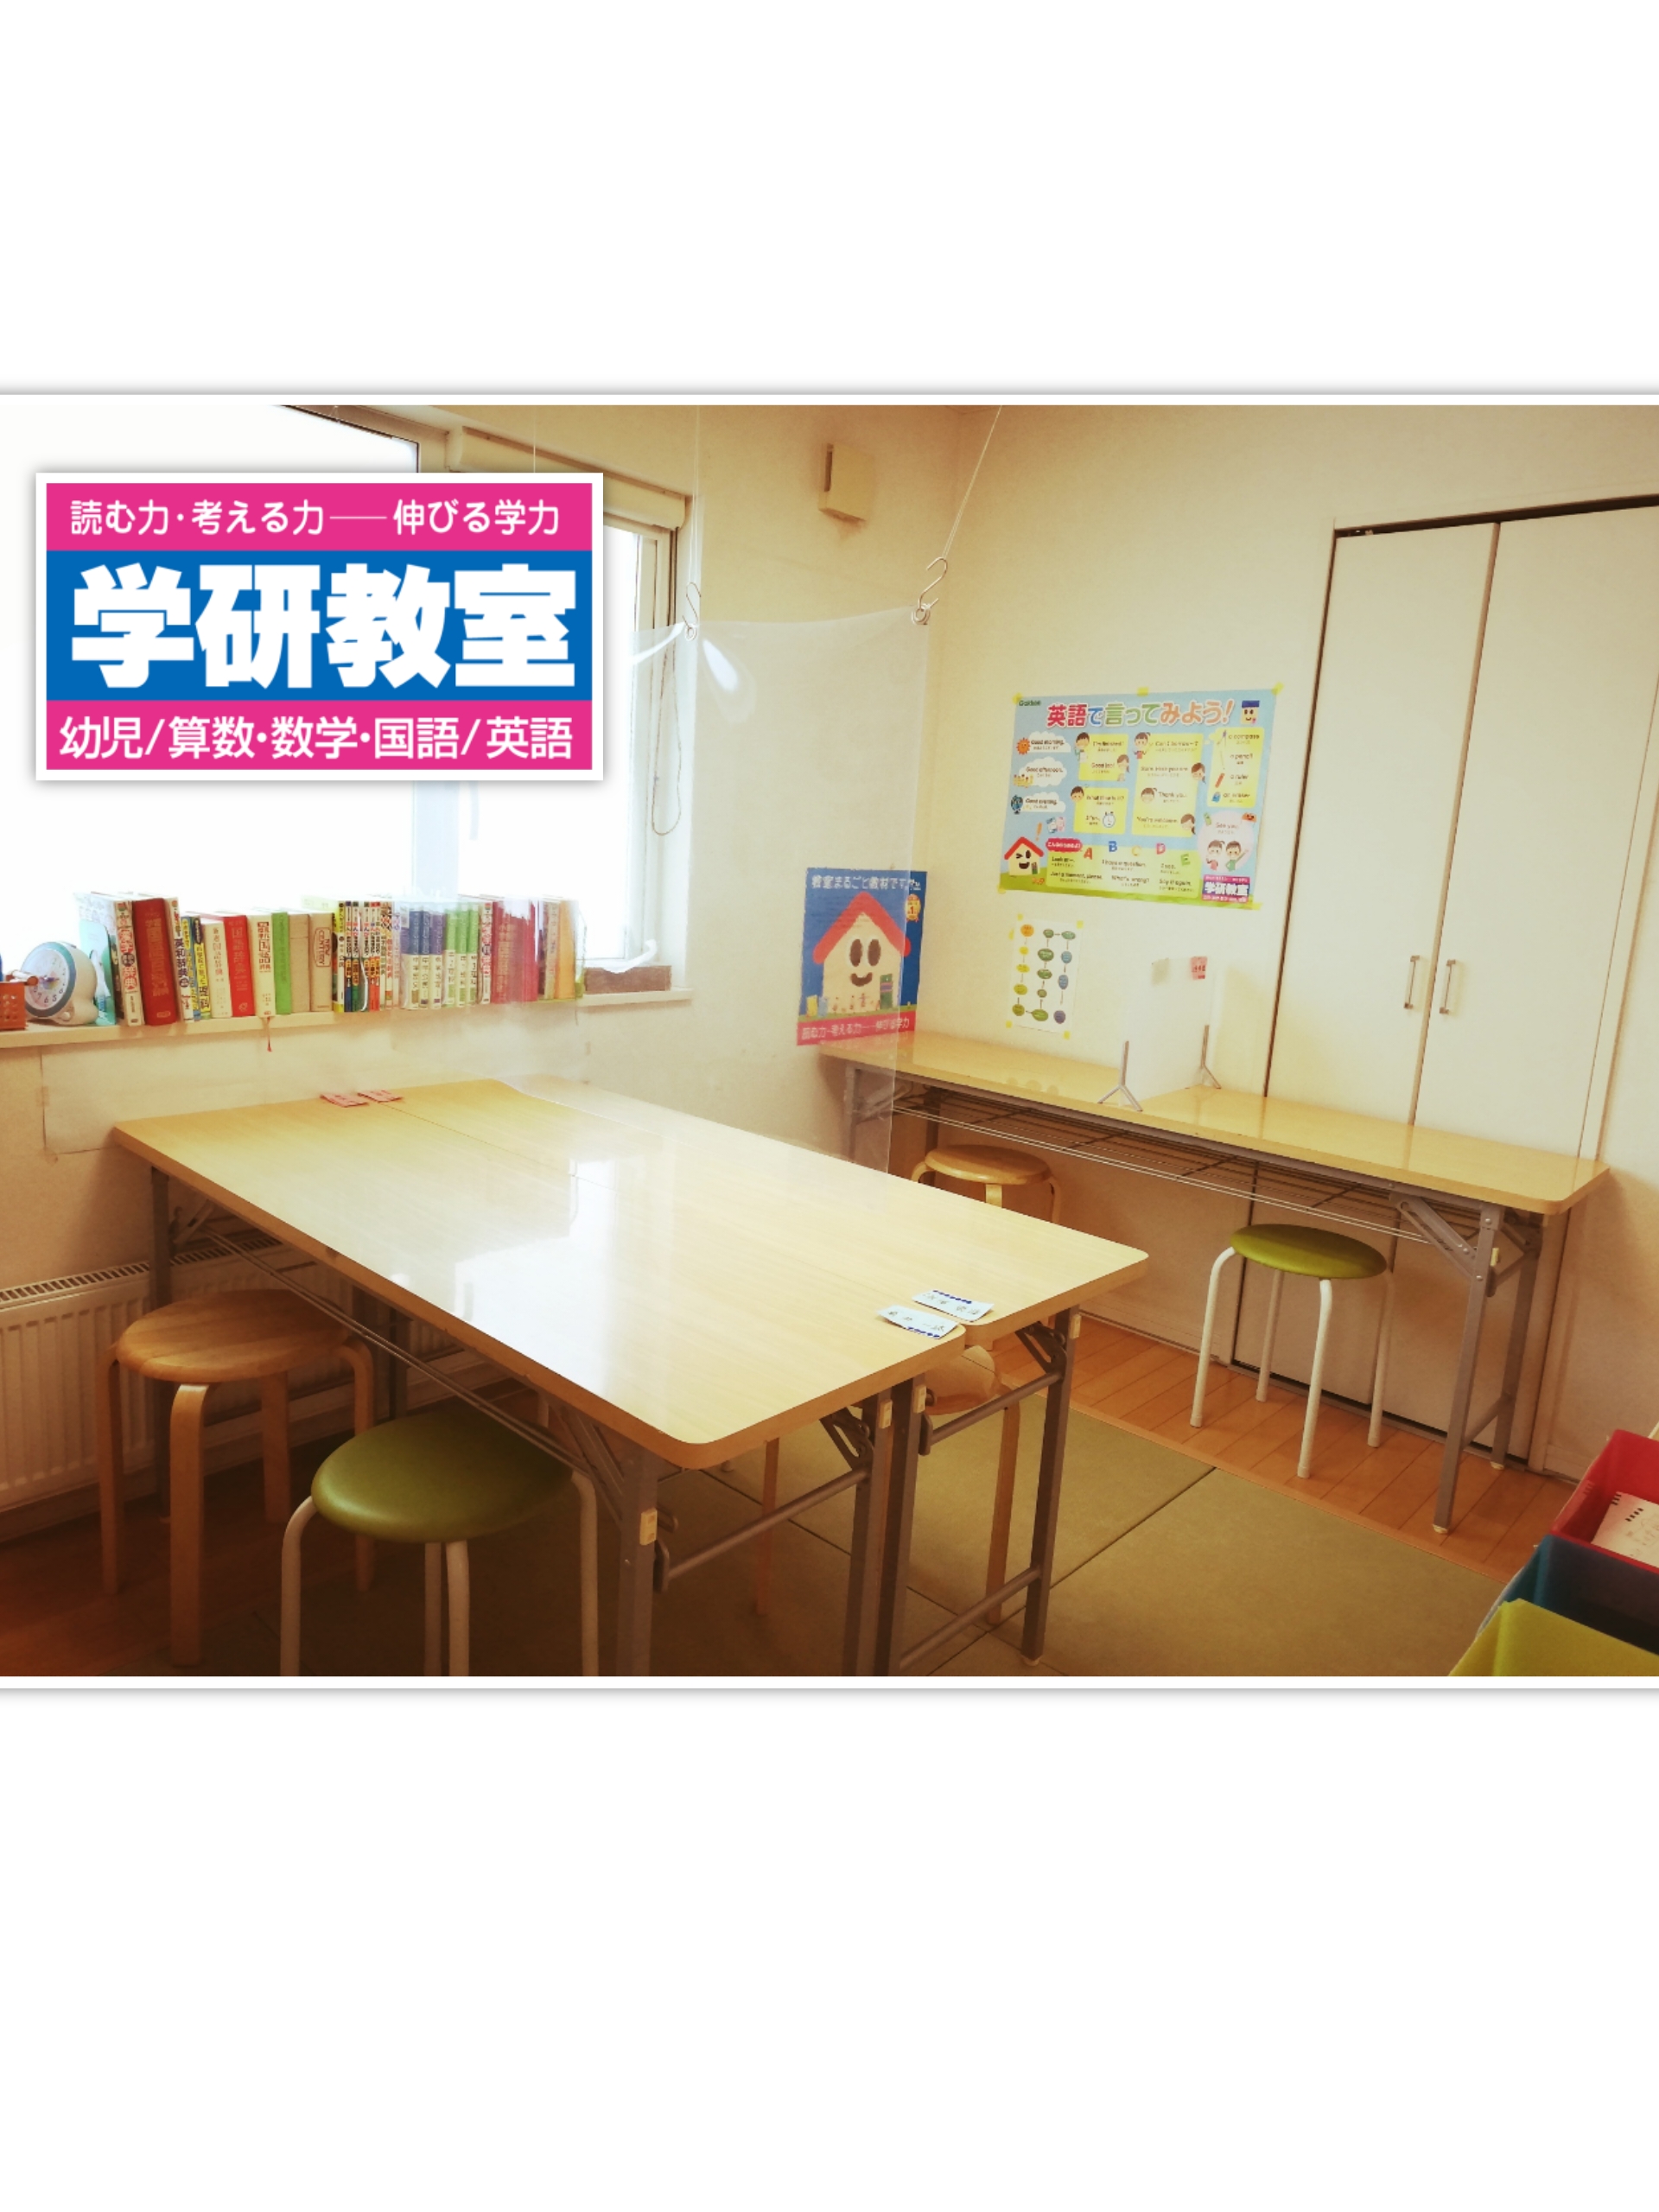 学研 東苗穂4条教室の雰囲気がわかる写真